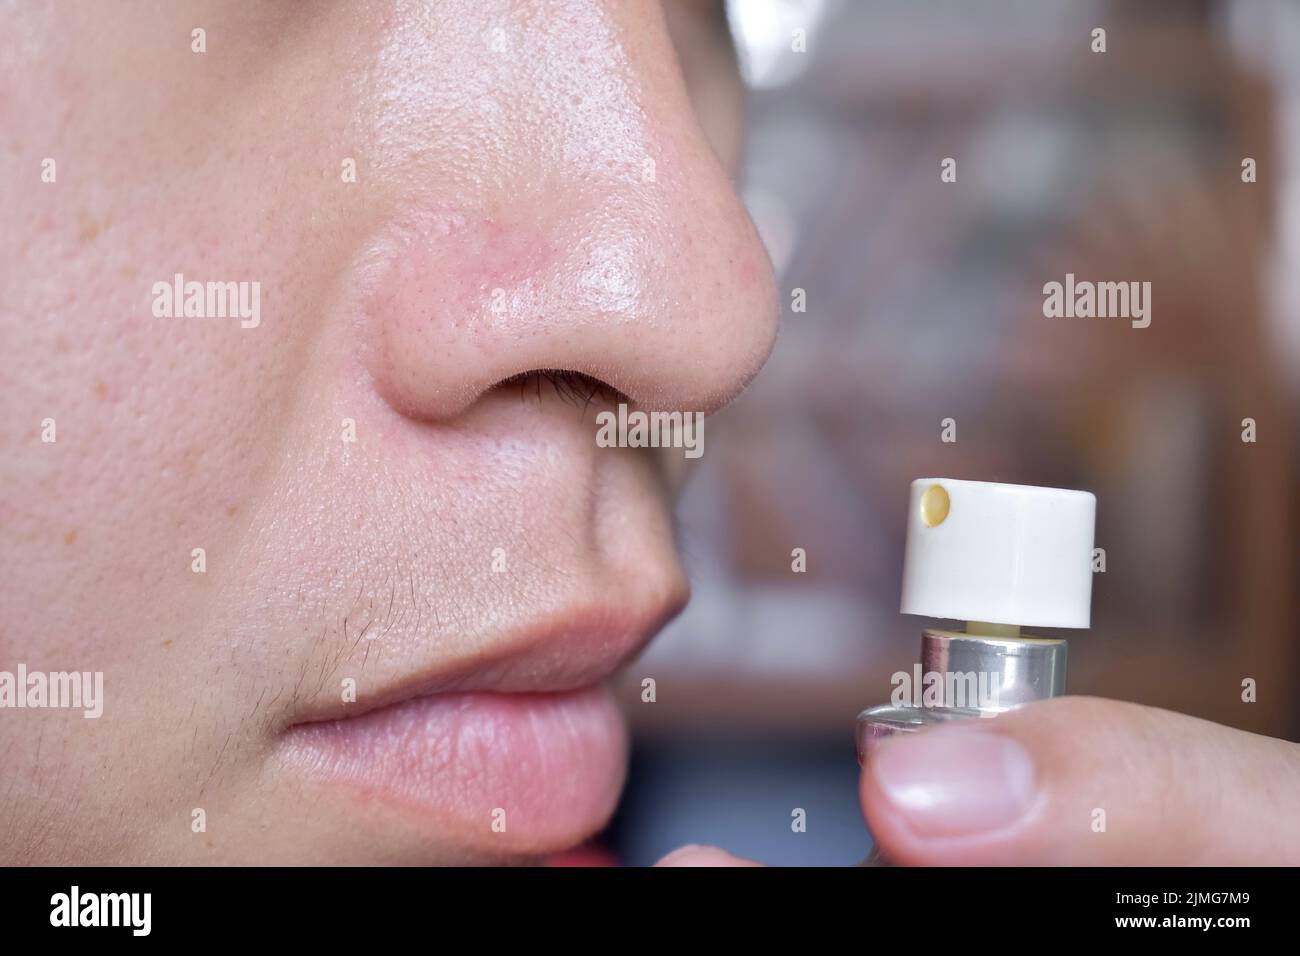 Südostasiatischer, chinesischer und myanmarischer junger Mann mit kalter Grippe bekommt Geruchverlust, genannt Anosmie. Er riecht nach Parfüm. Stockfoto